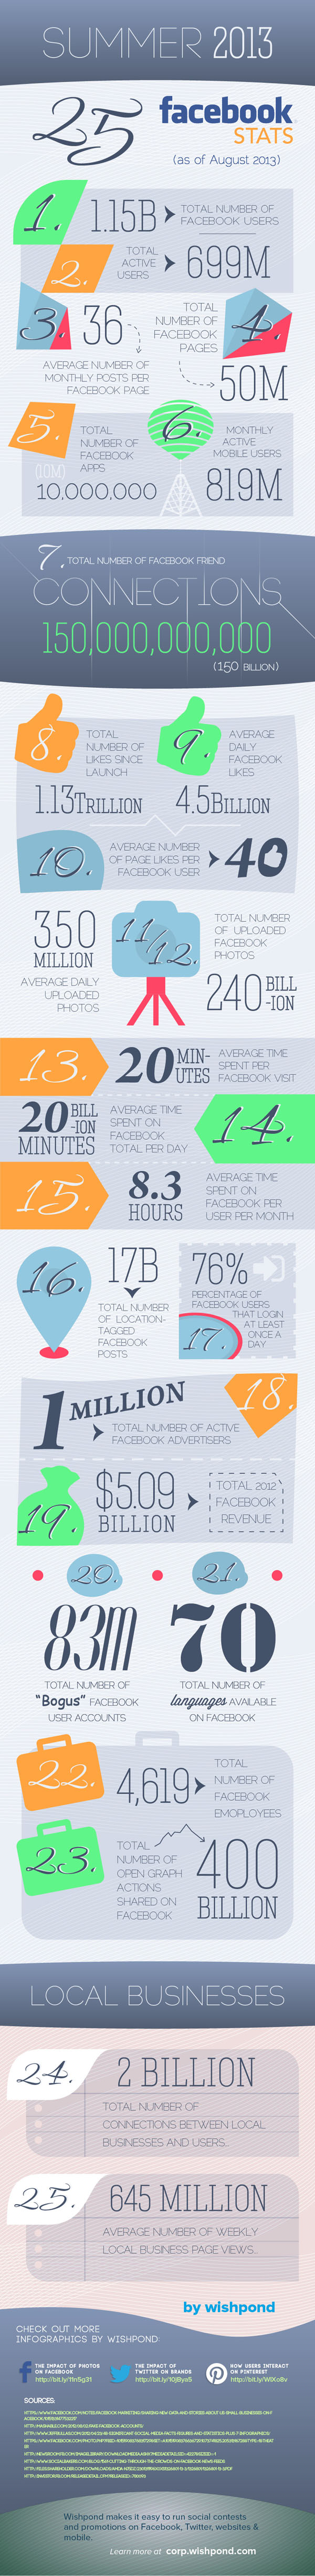 Facebook Statistics Infographic August 2013